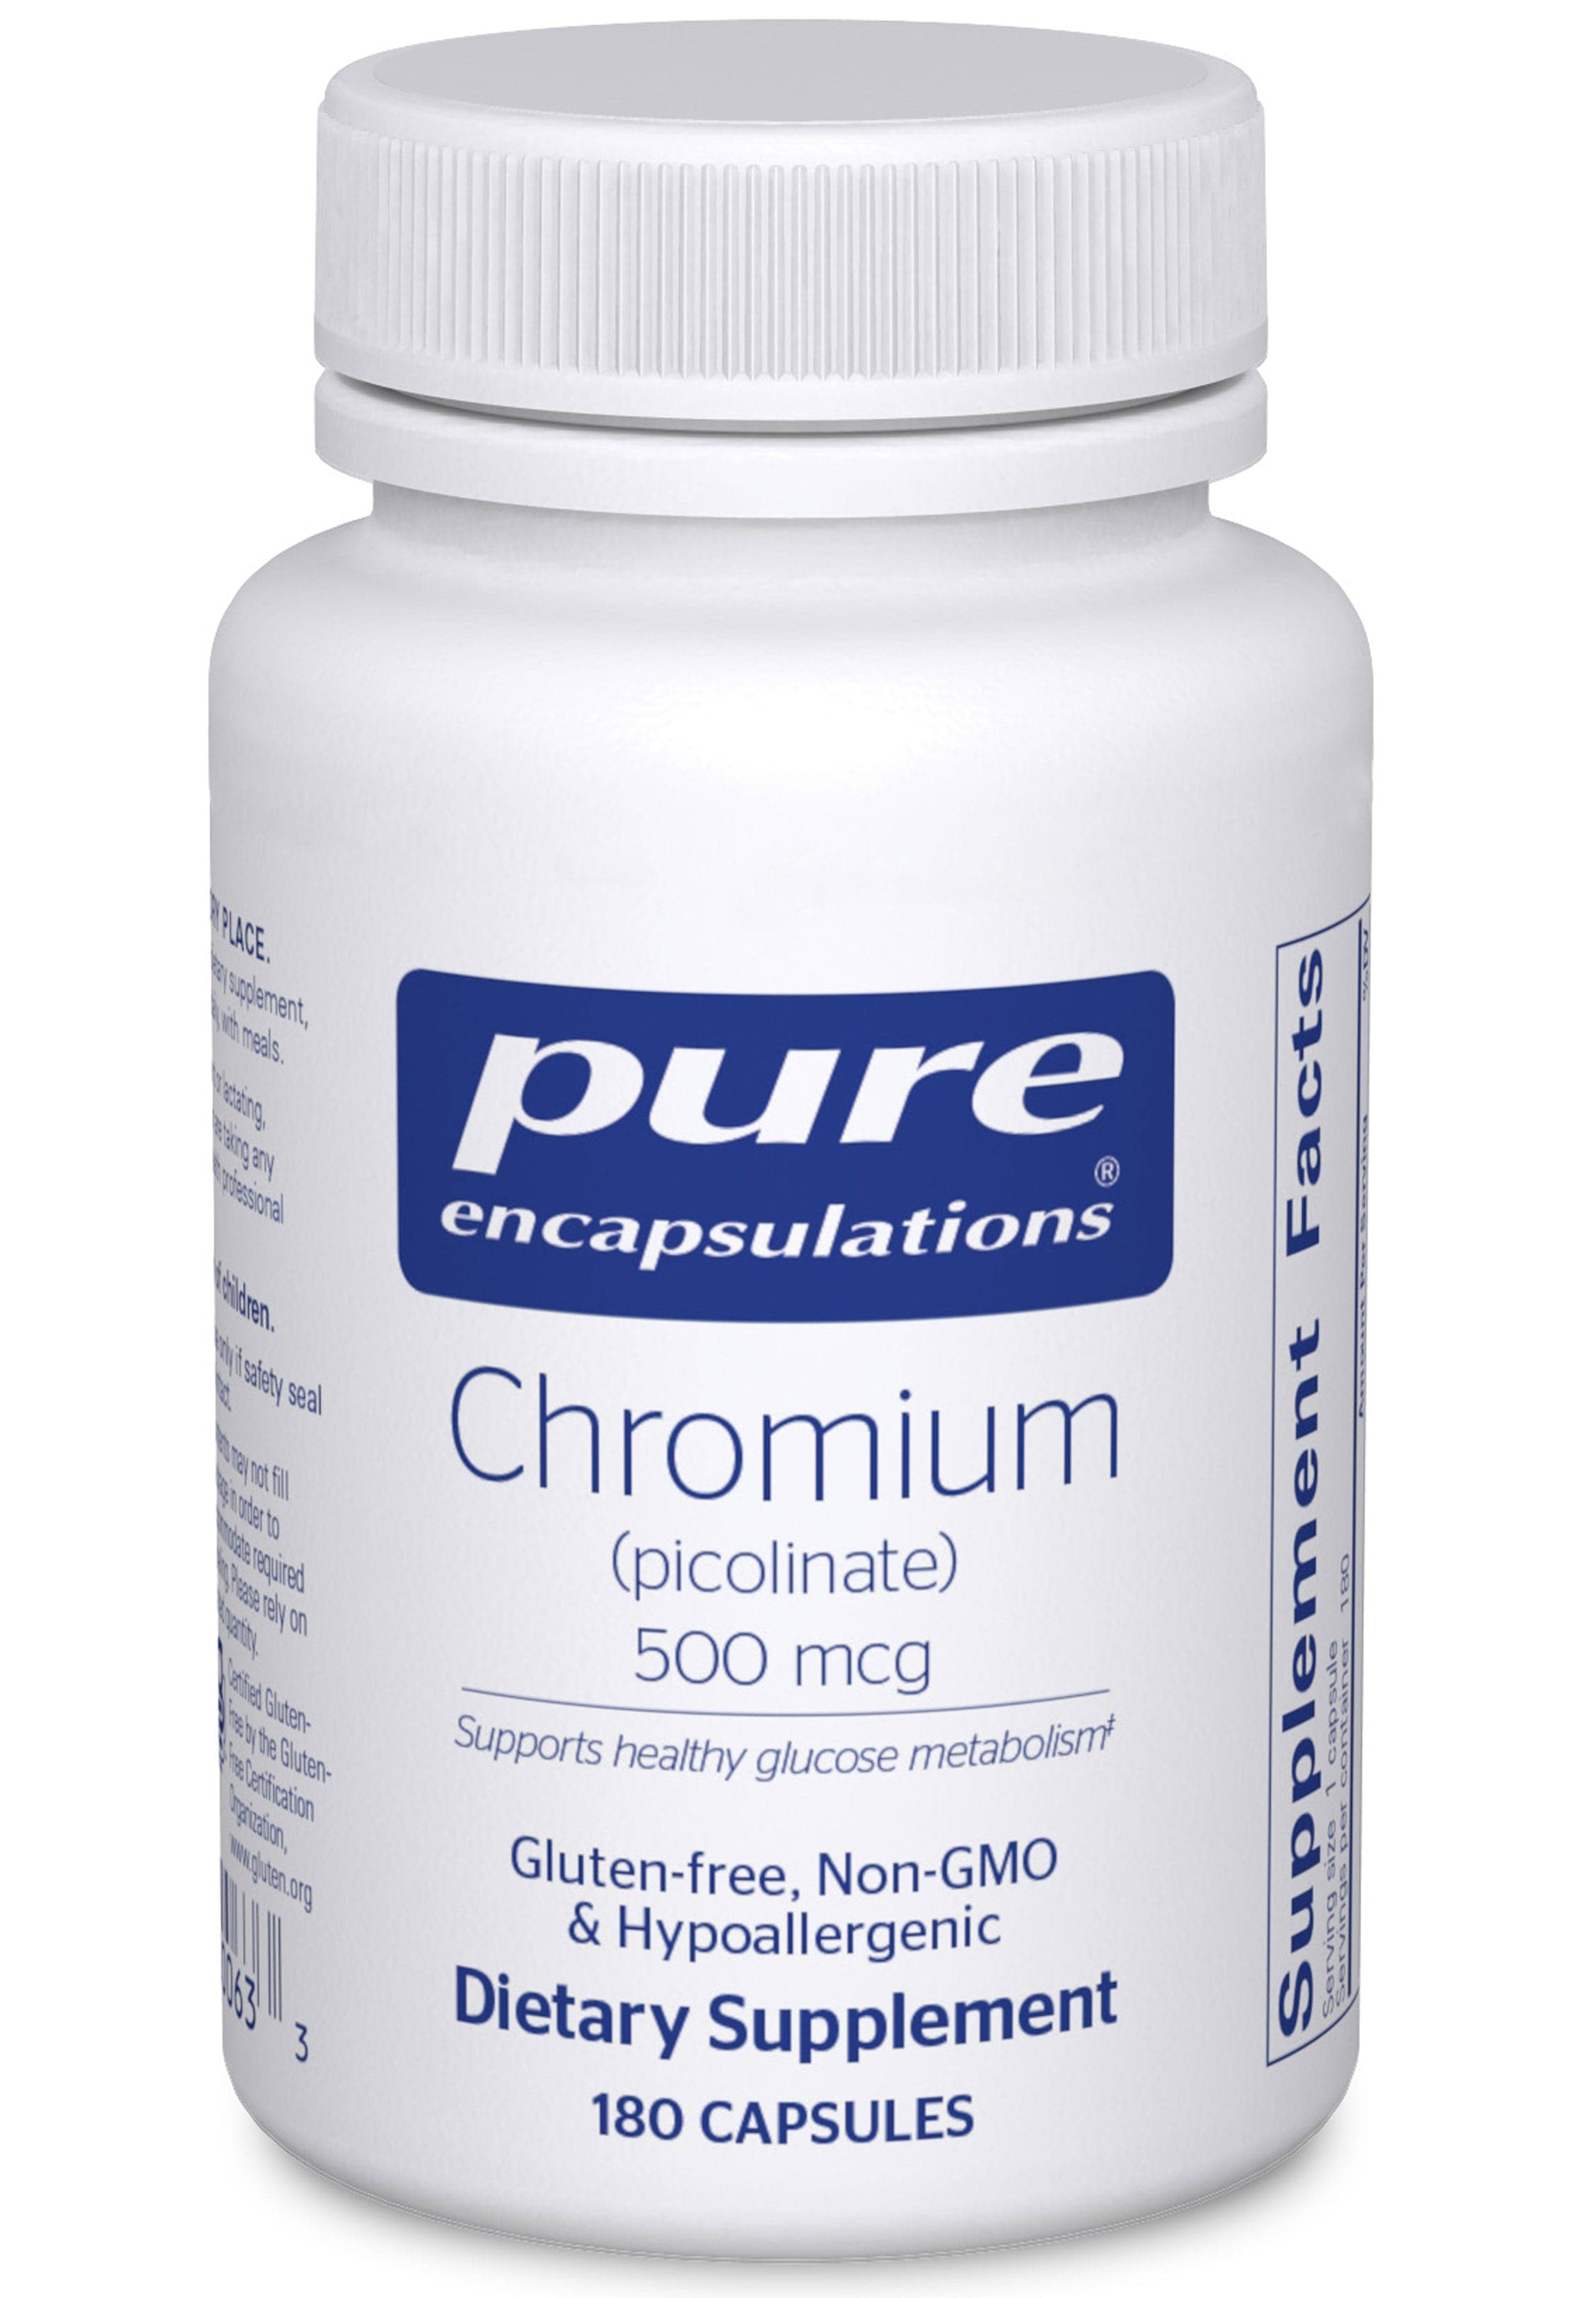 Pure Encapsulations Chromium Picolinate 500 mcg